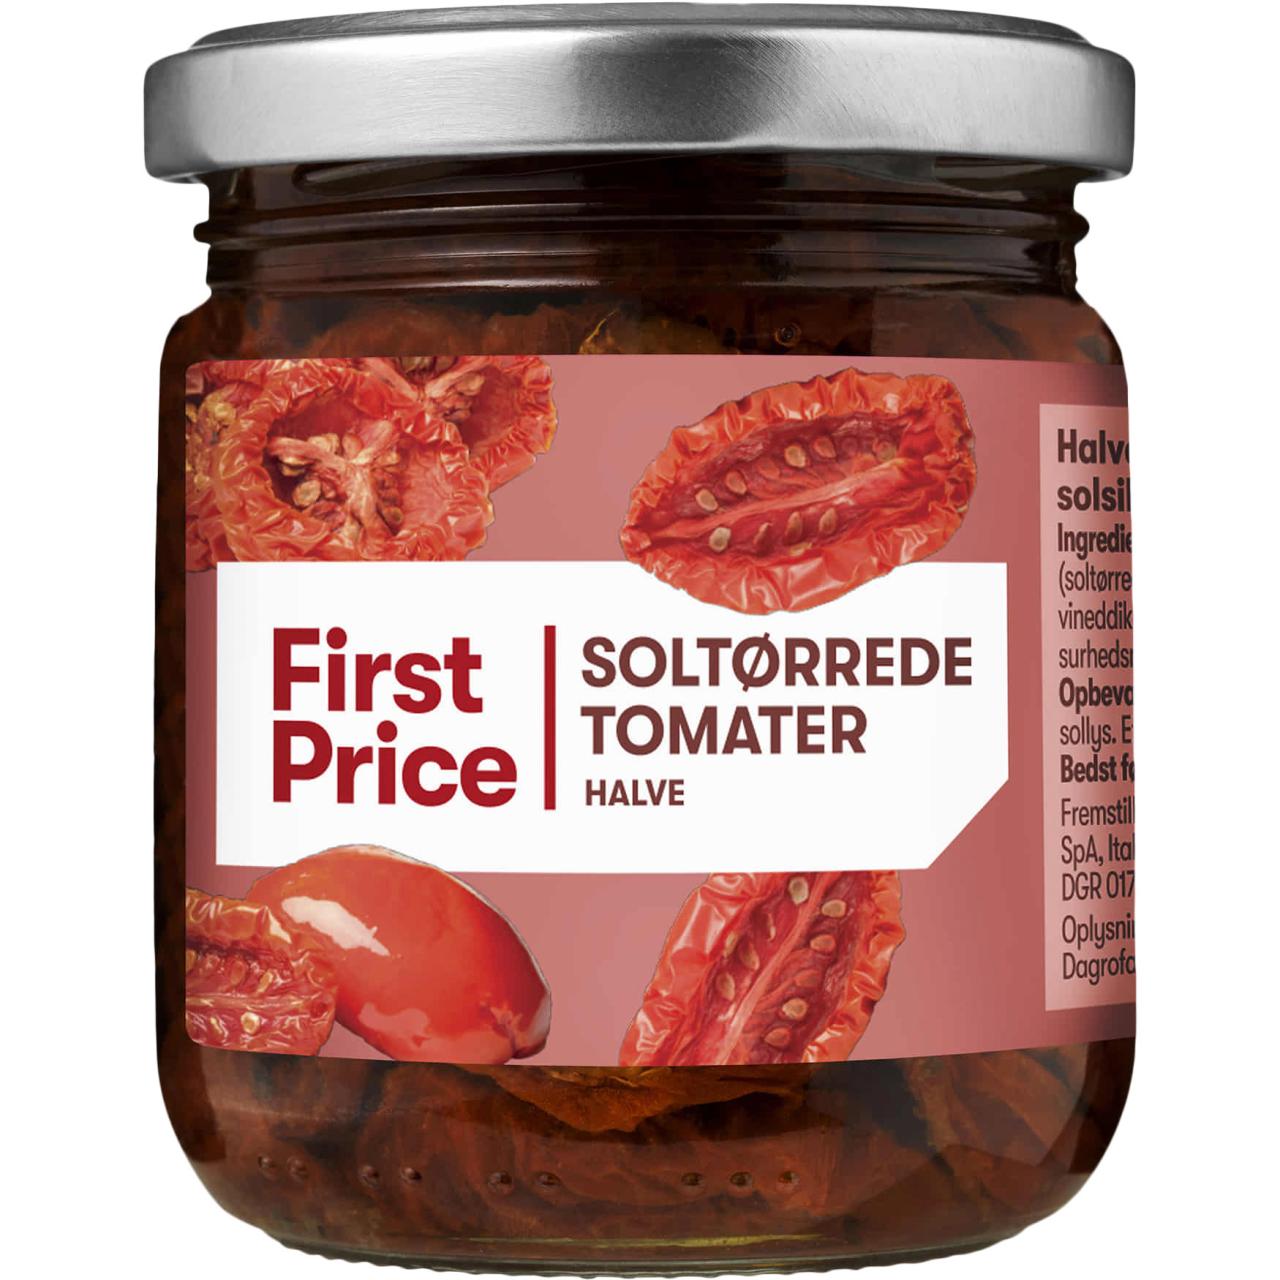 First Price Soltørrede Halve Tomater/Sonnengereifte halbe Tomaten 185g